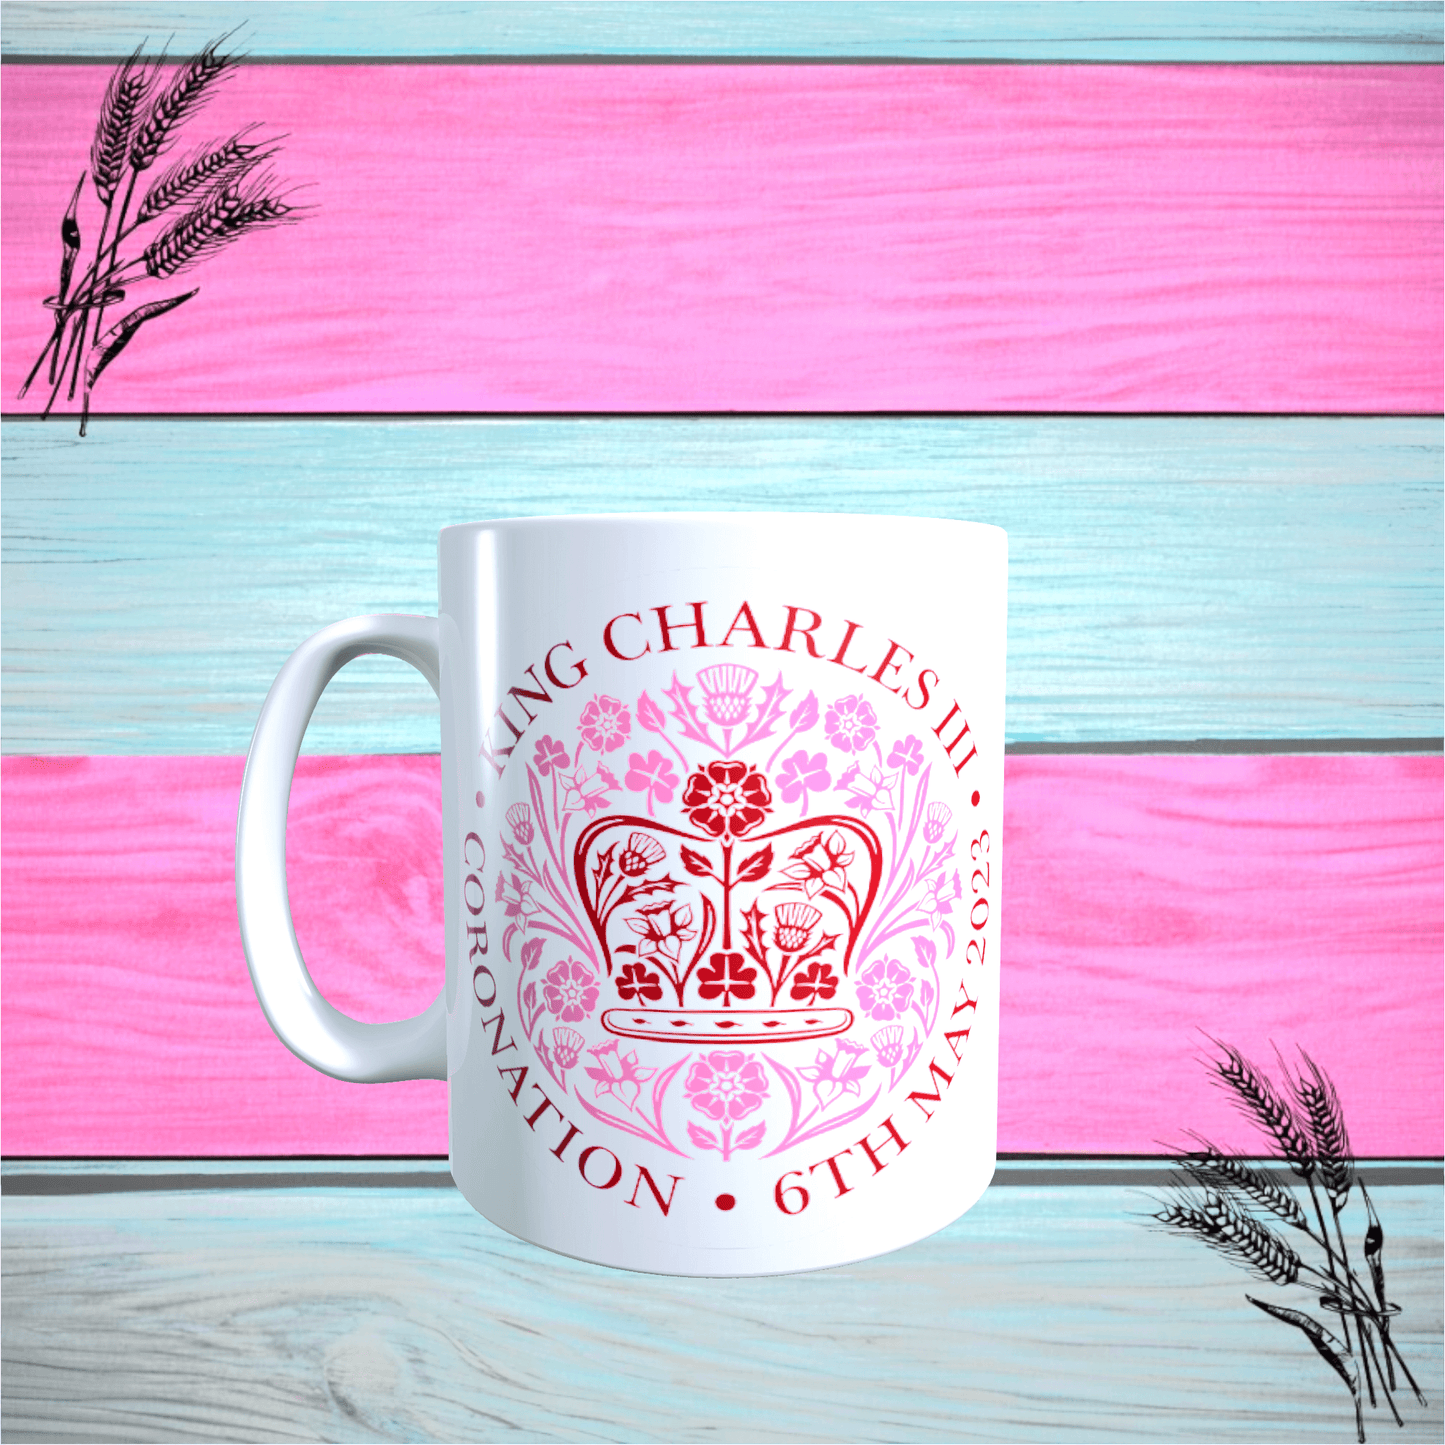 King Charles coronation mug